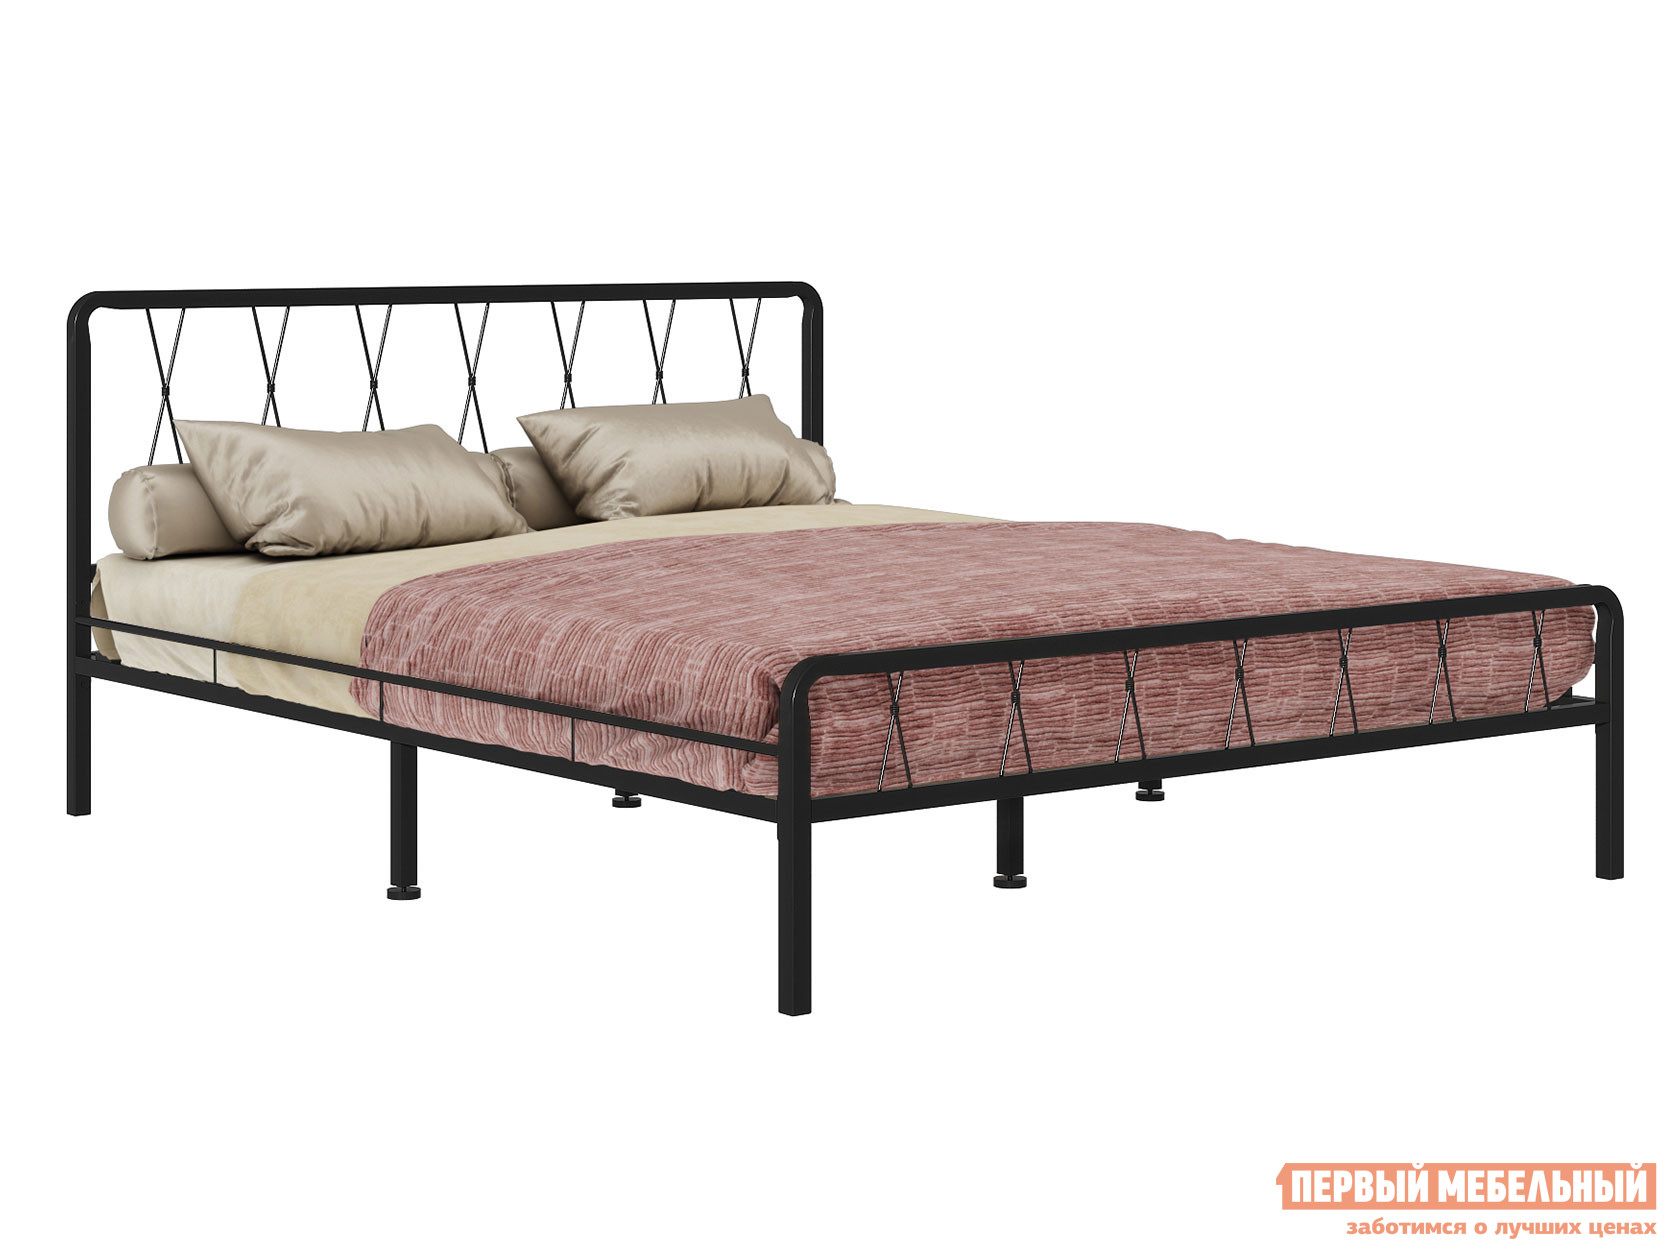 Односпальная кровать  Камилла Черный металл, 120х200 см